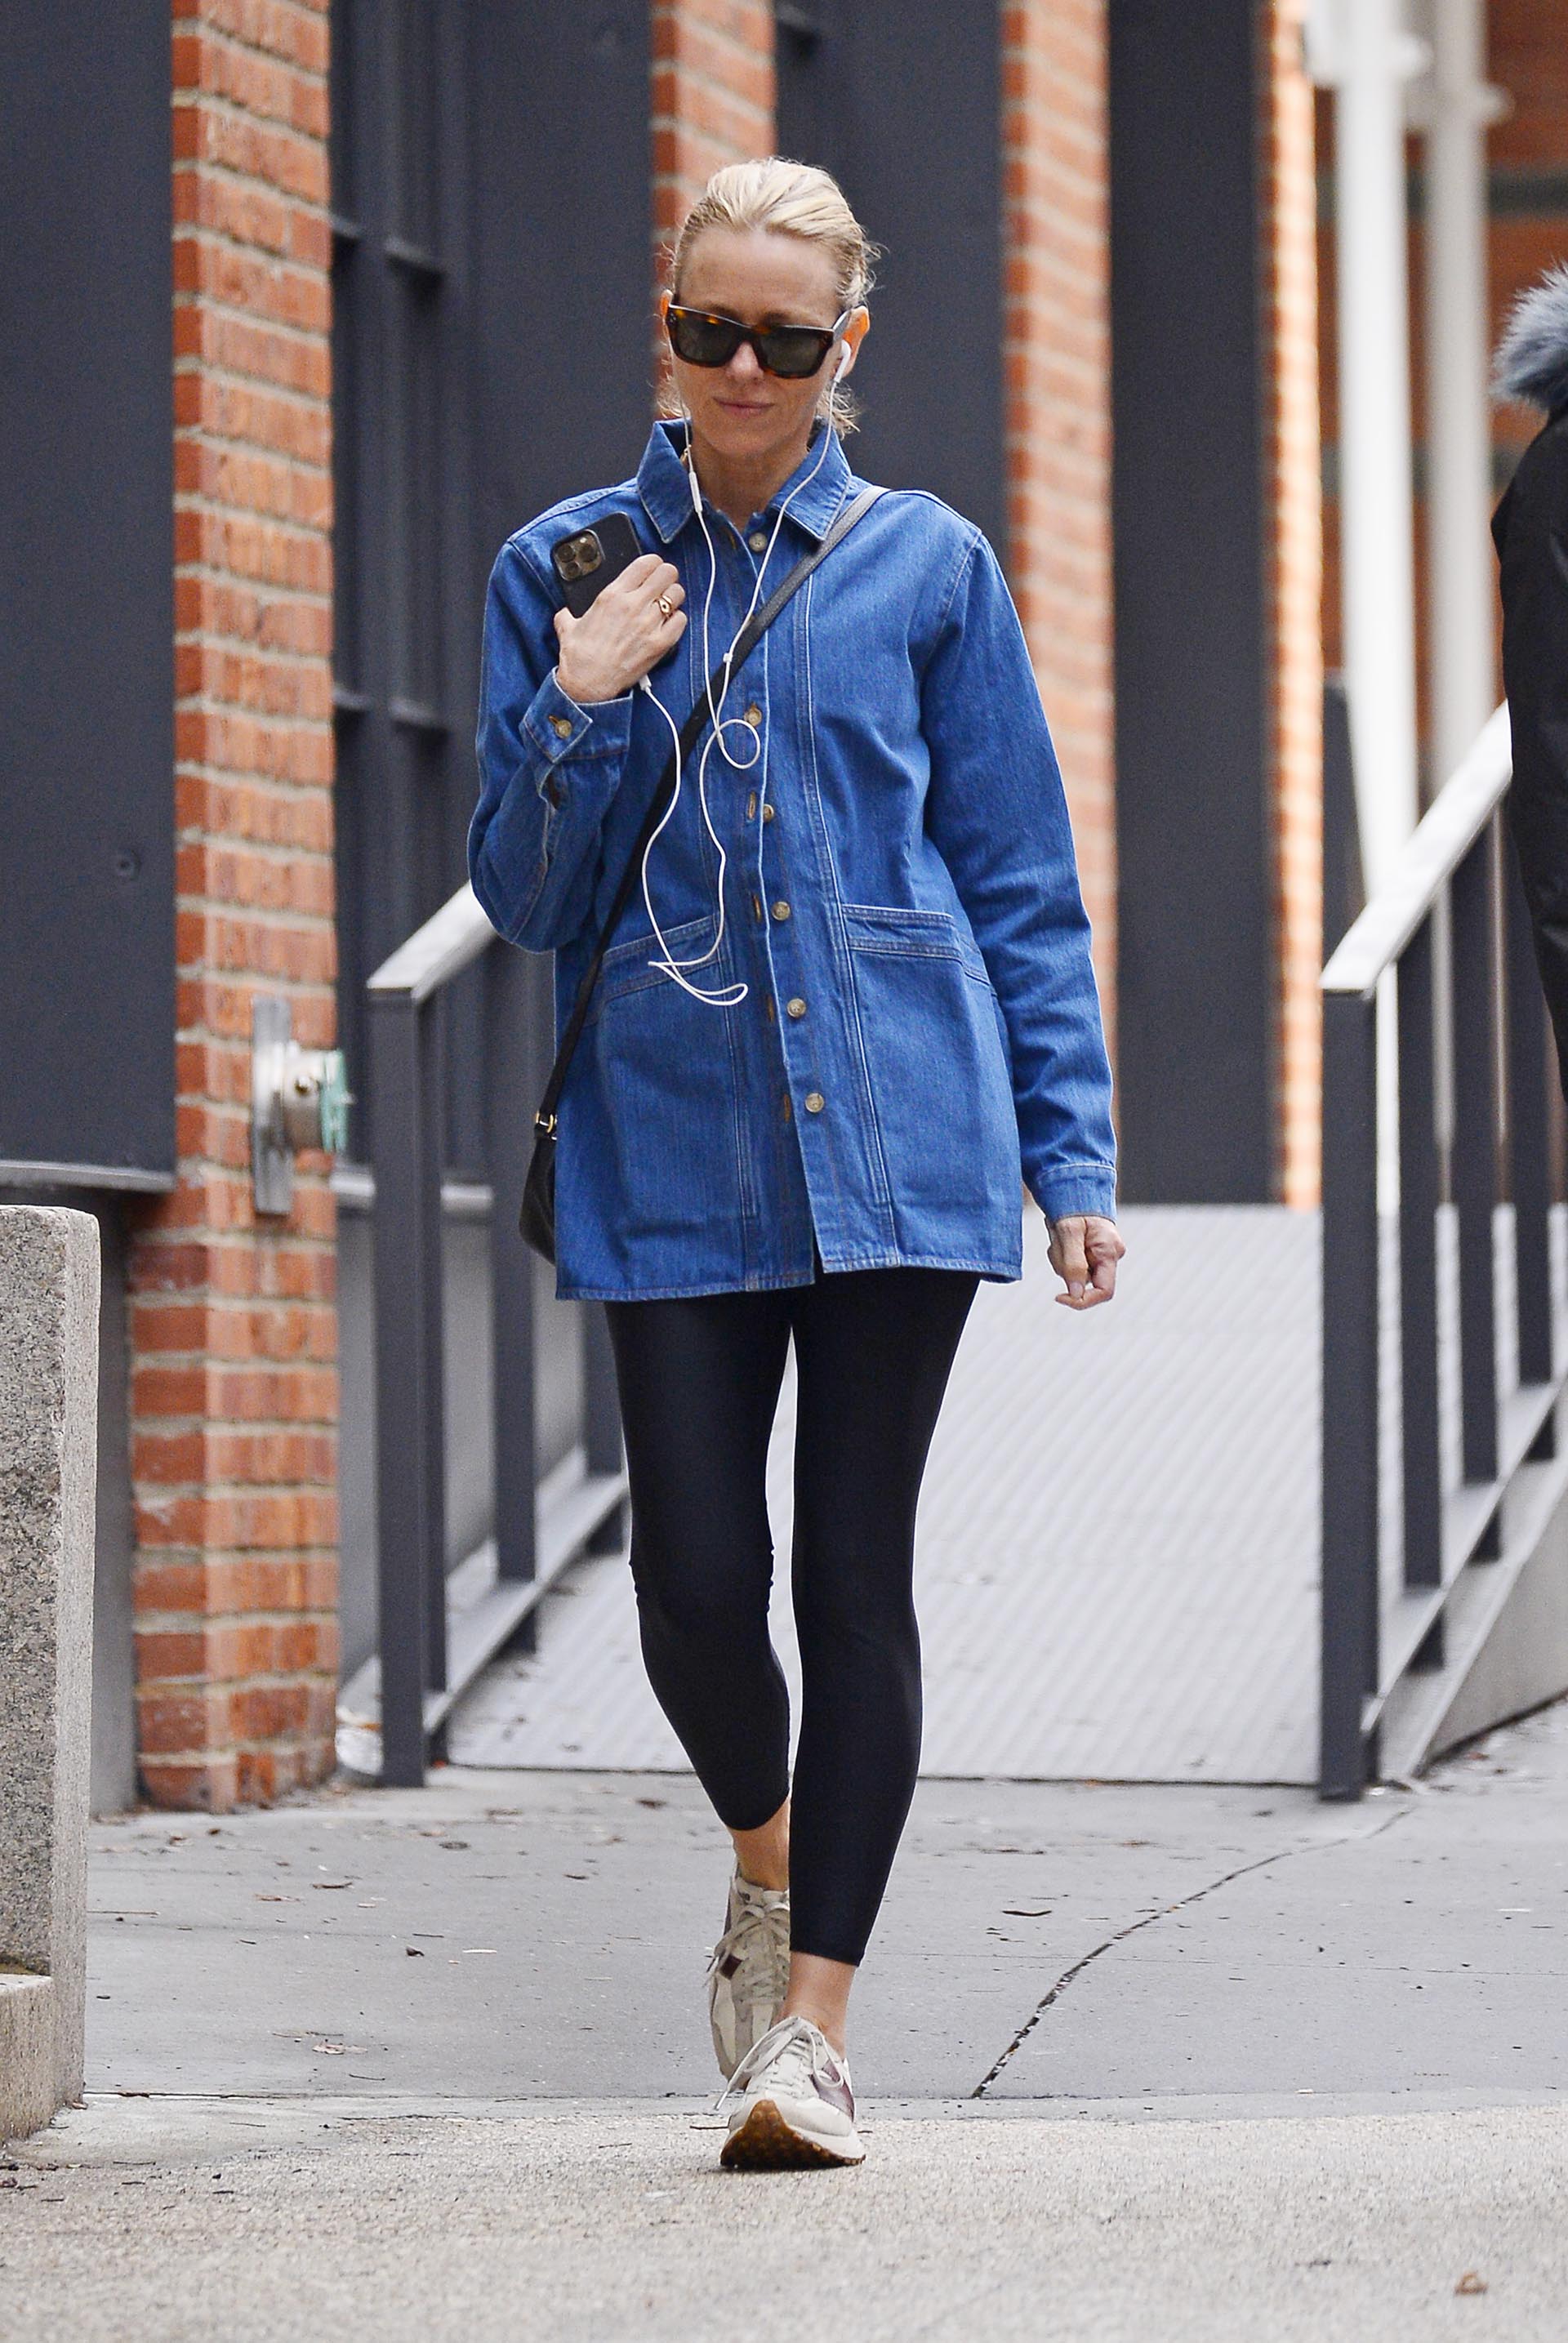 Naomi Watts fue fotografiada mientras daba un paseo por las calles de Nueva York. Lució unas calzas negras, una camisa de jean, zapatillas cómodas y aprovechó la oportunidad para escuchar música desde su teléfono mientras caminaba. Además, llevó puestos lentes de sol